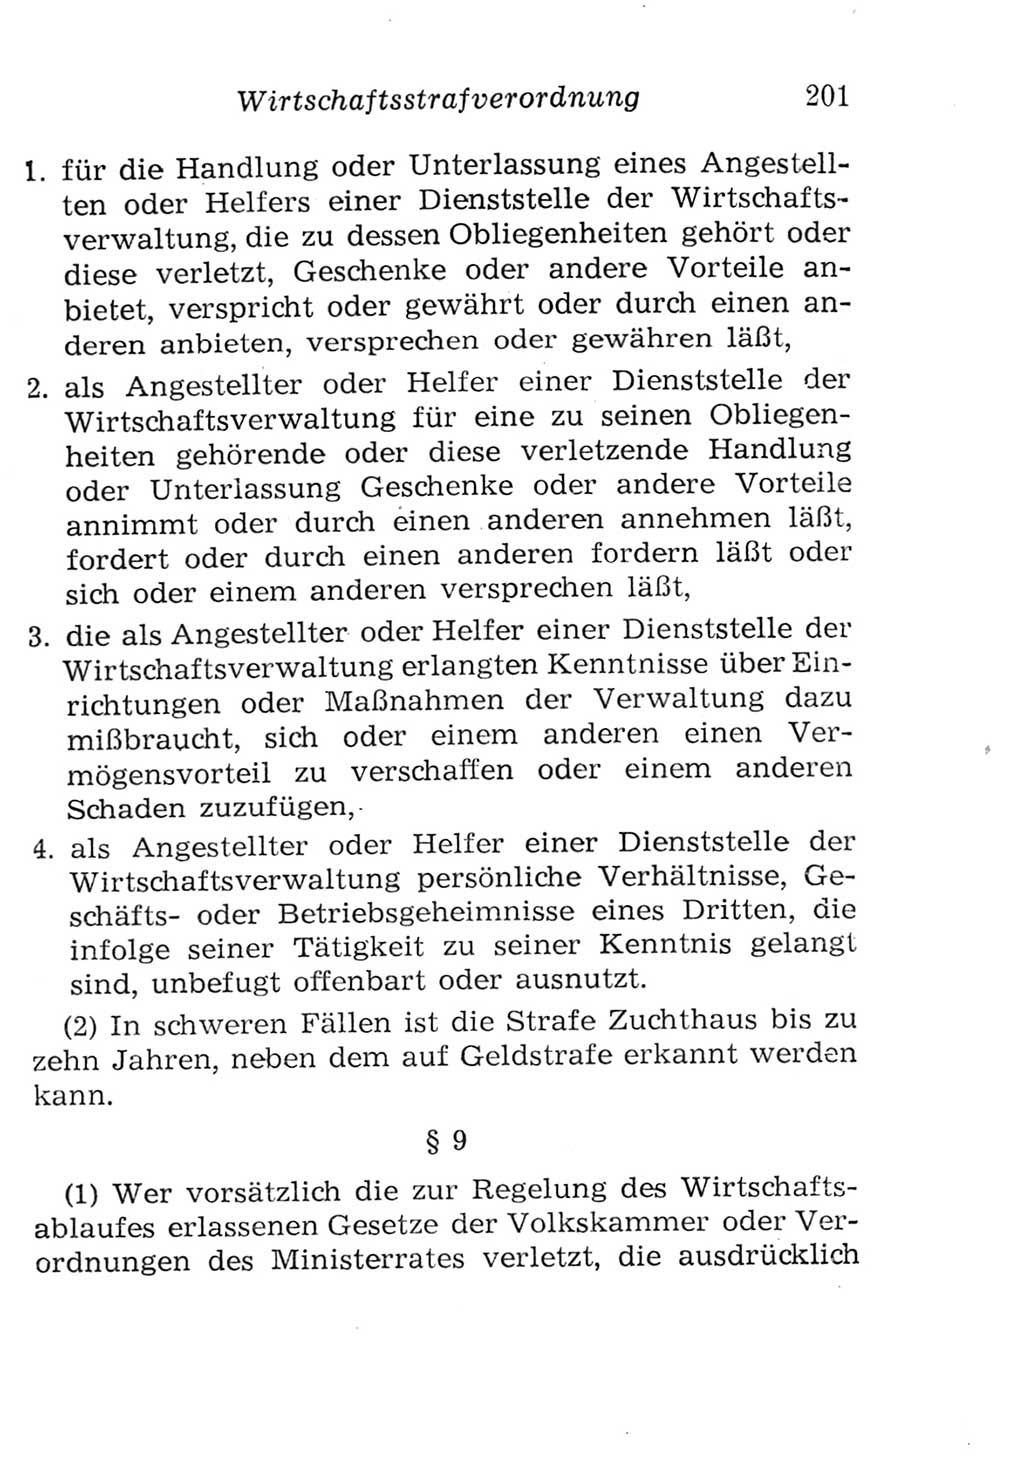 Strafgesetzbuch (StGB) und andere Strafgesetze [Deutsche Demokratische Republik (DDR)] 1957, Seite 201 (StGB Strafges. DDR 1957, S. 201)